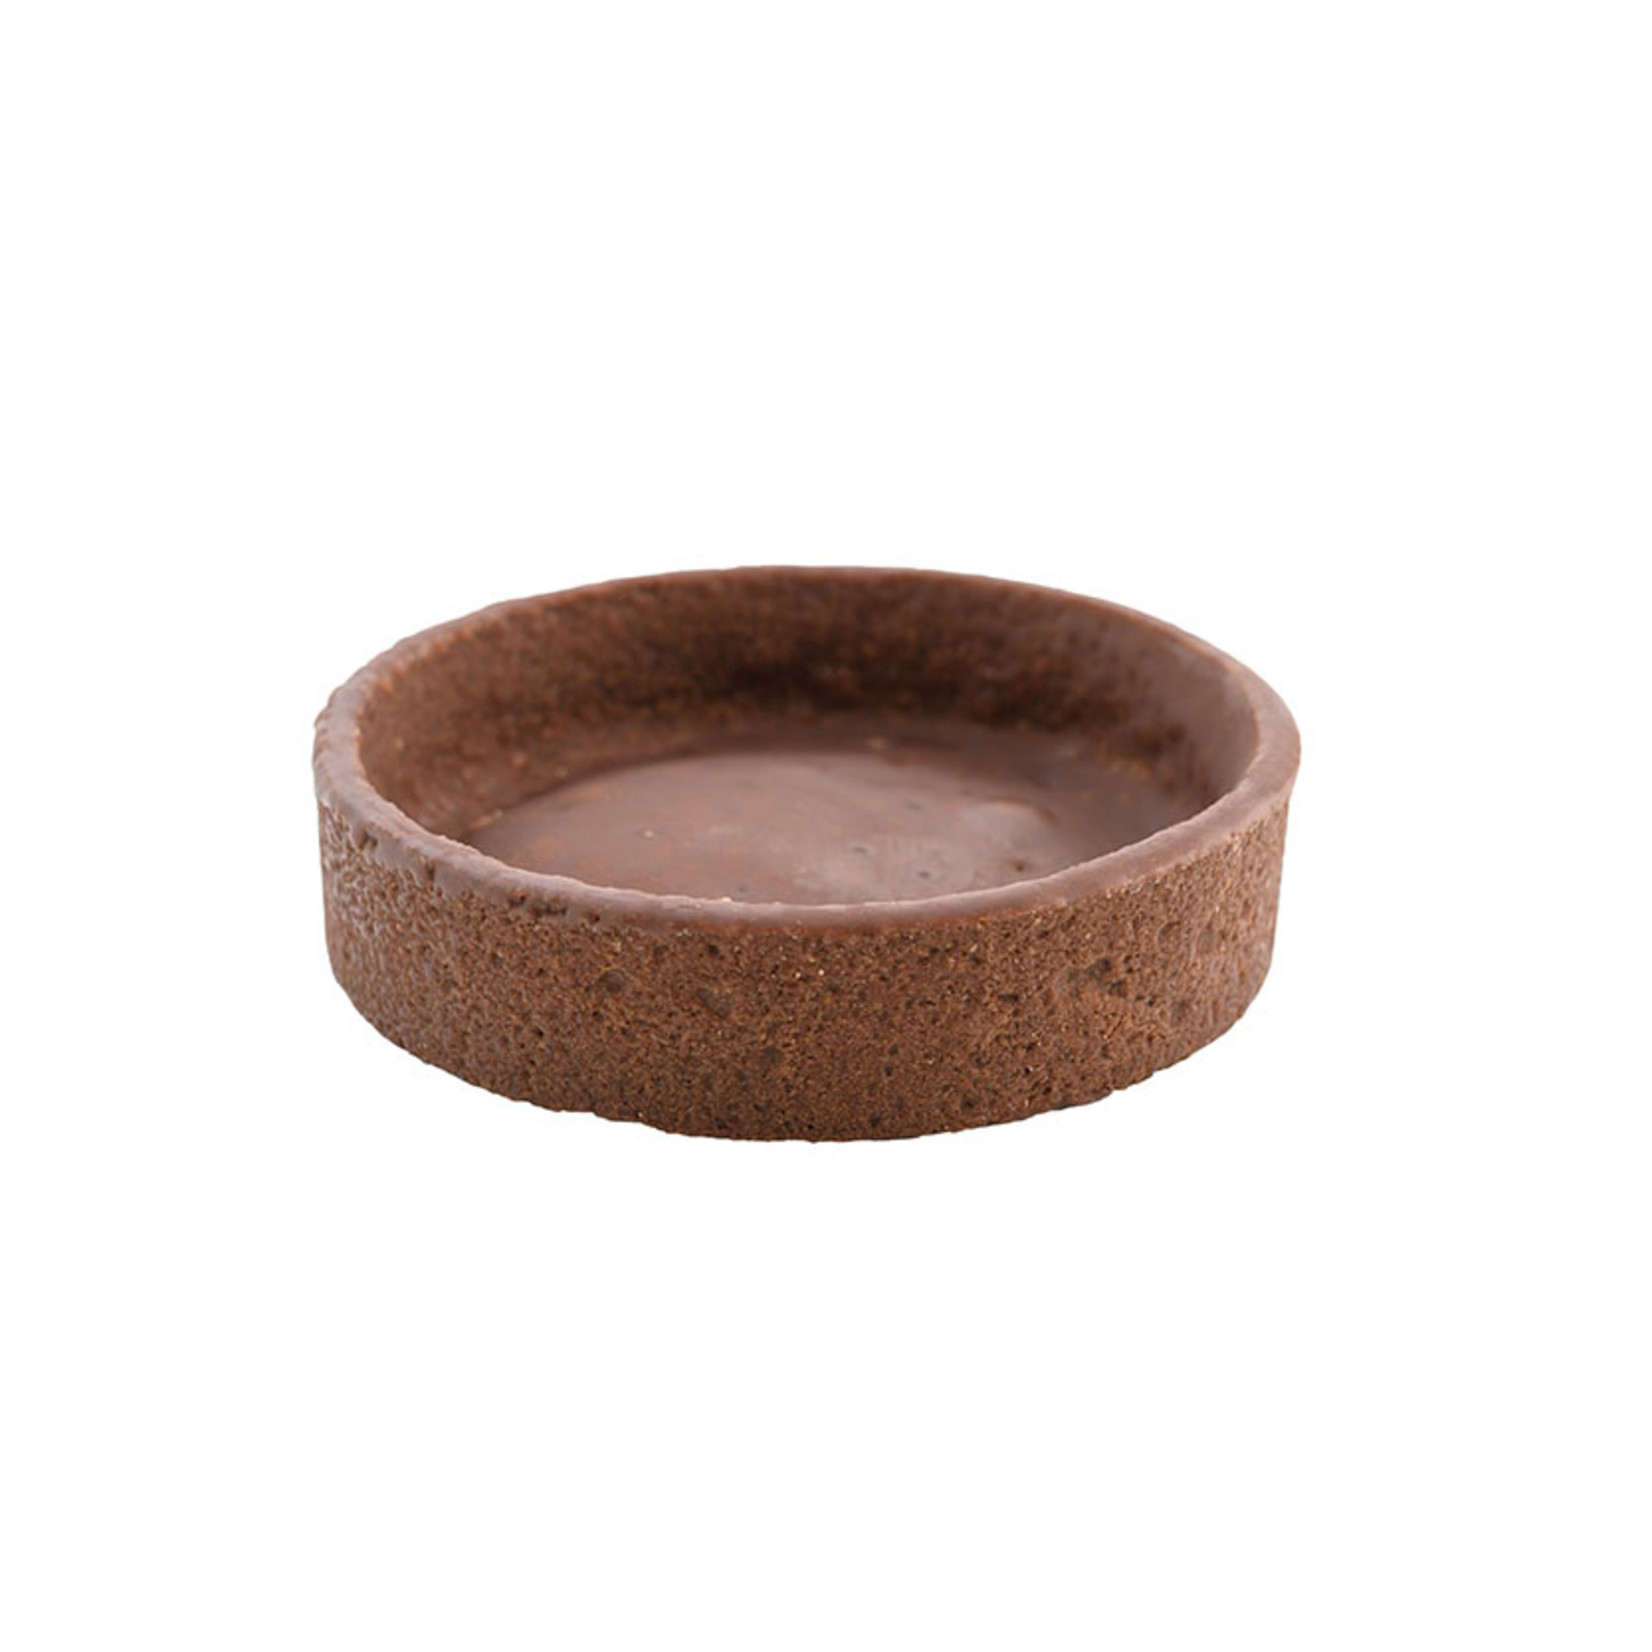 Pidy Pidy - Tart shell, Chocolate round - 3.2'' (60ct), 307.34.060US